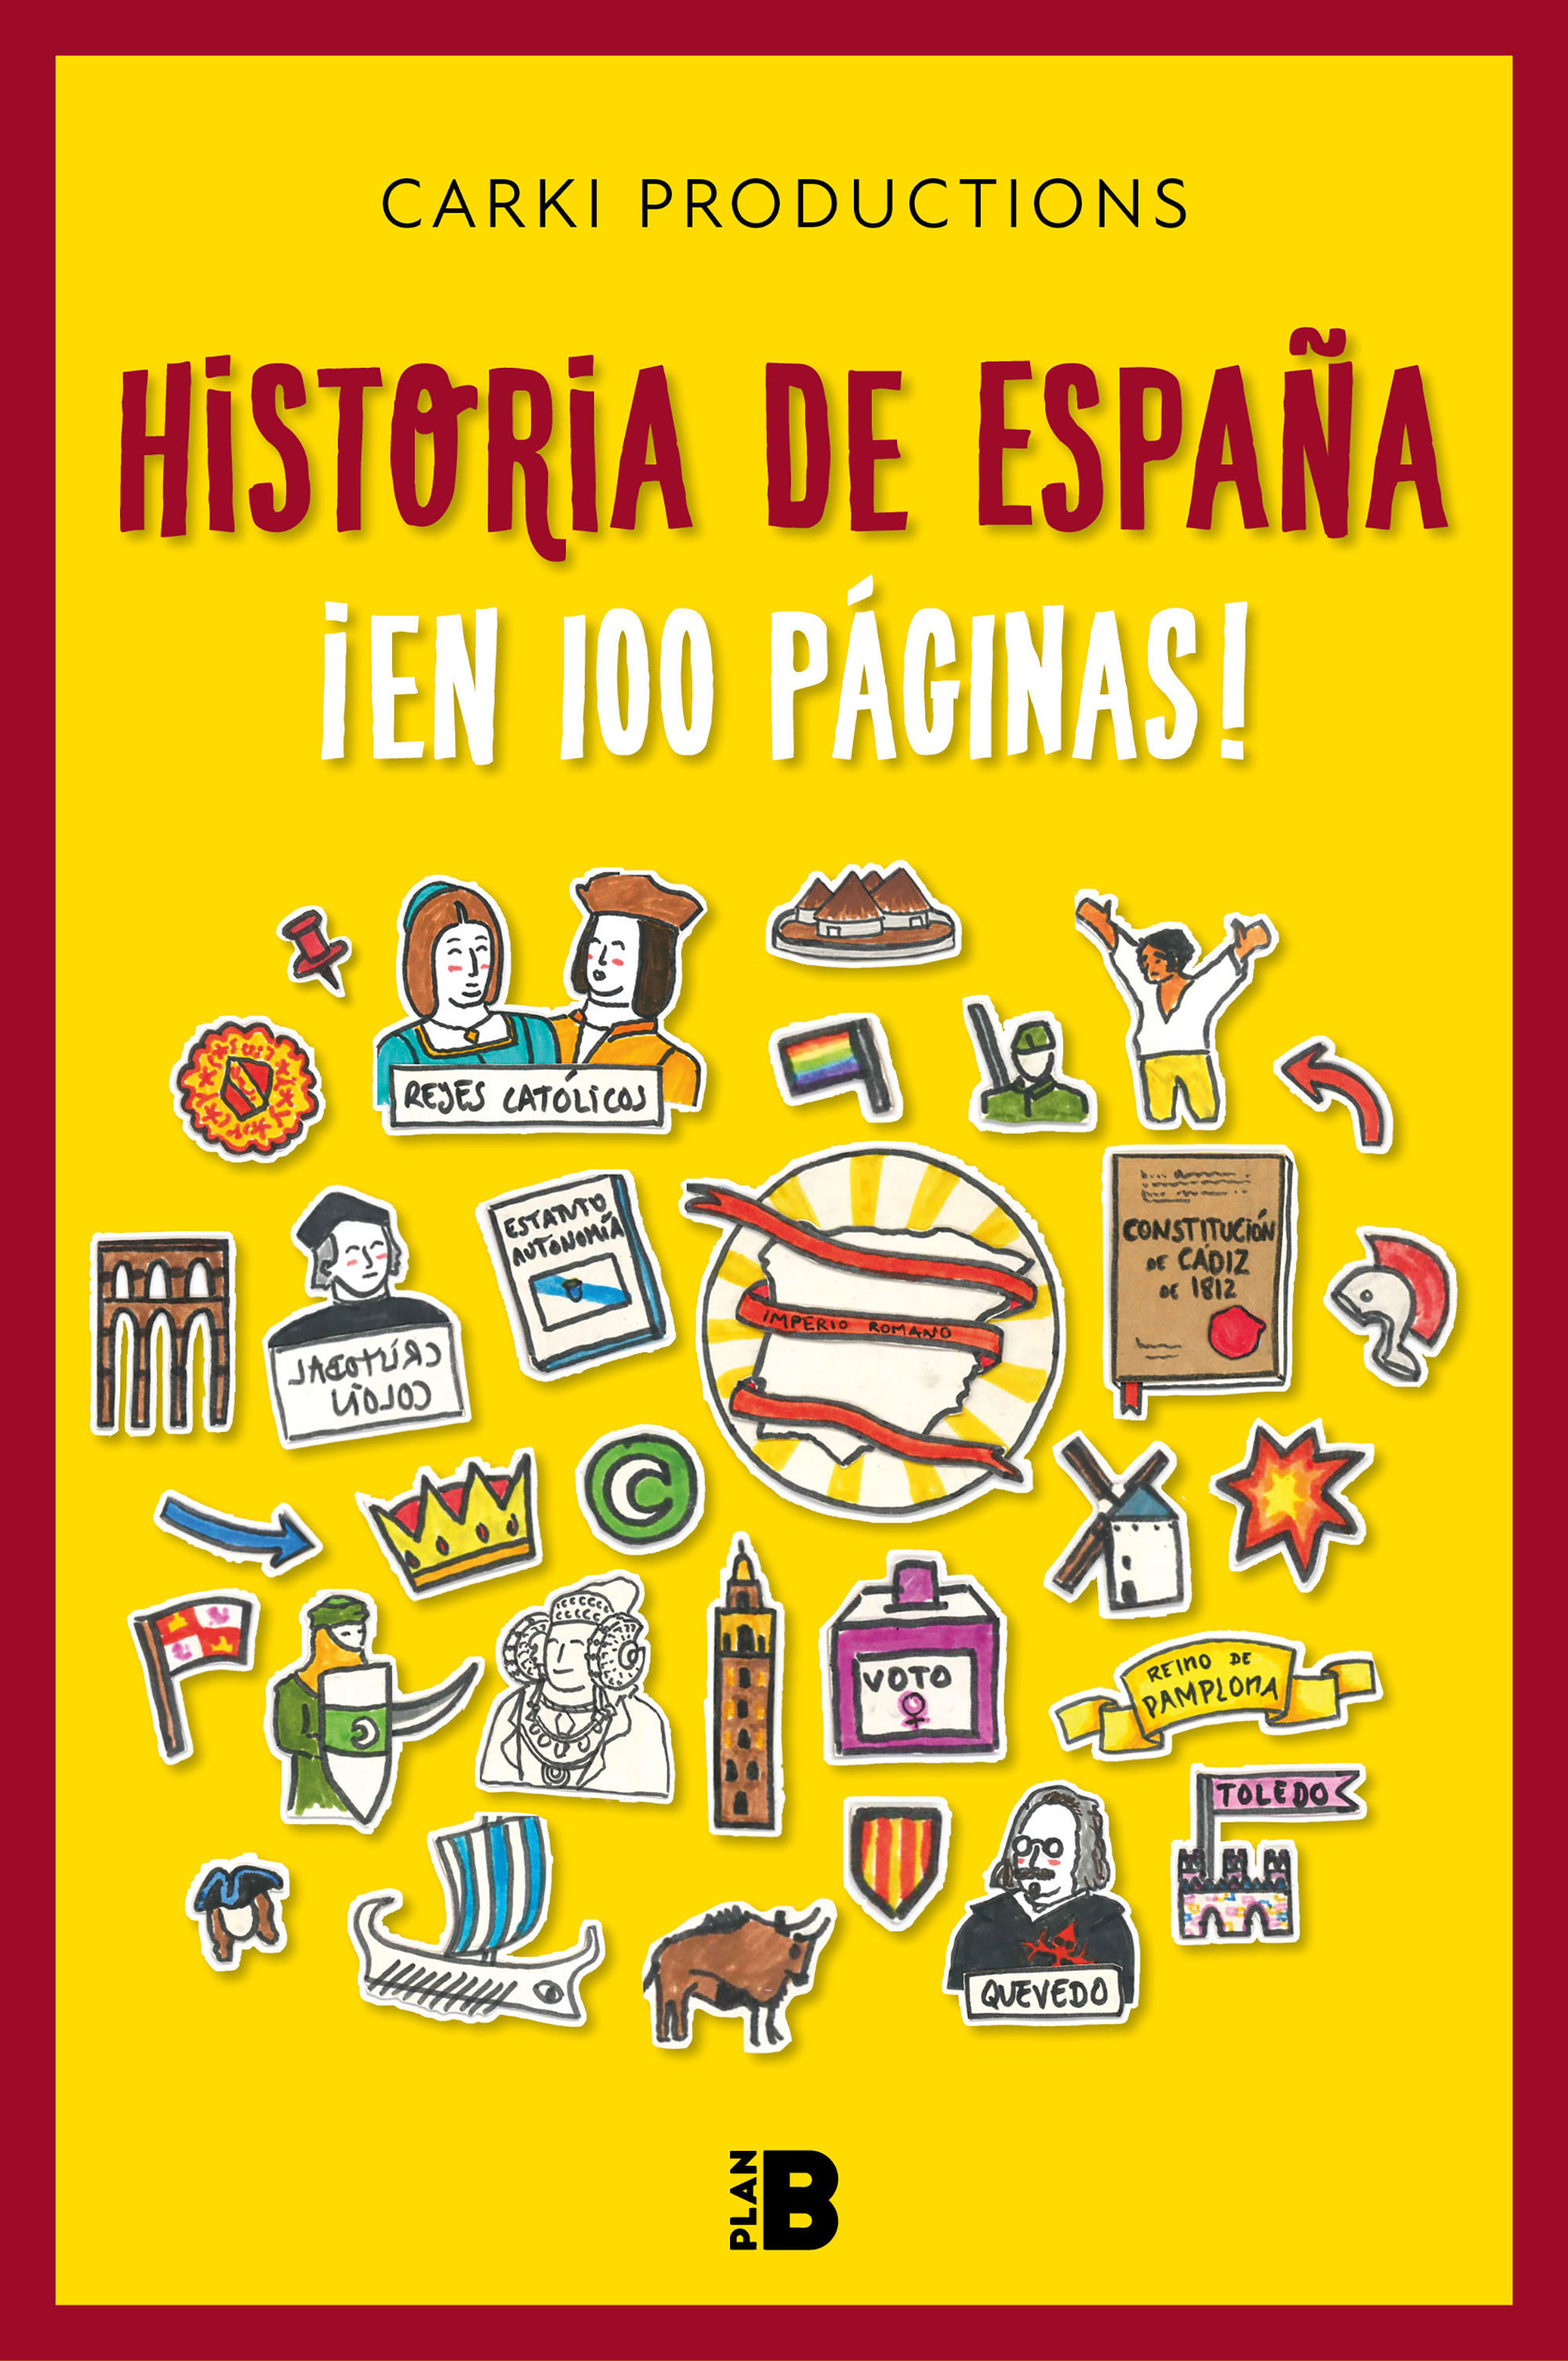 HISTORIA DE ESPAÑA ¡EN 100 PÁGINAS!. EMBOSCARSE, HABITAR Y RESISTIR EN LOS TERRITORIOS EN LUCHA